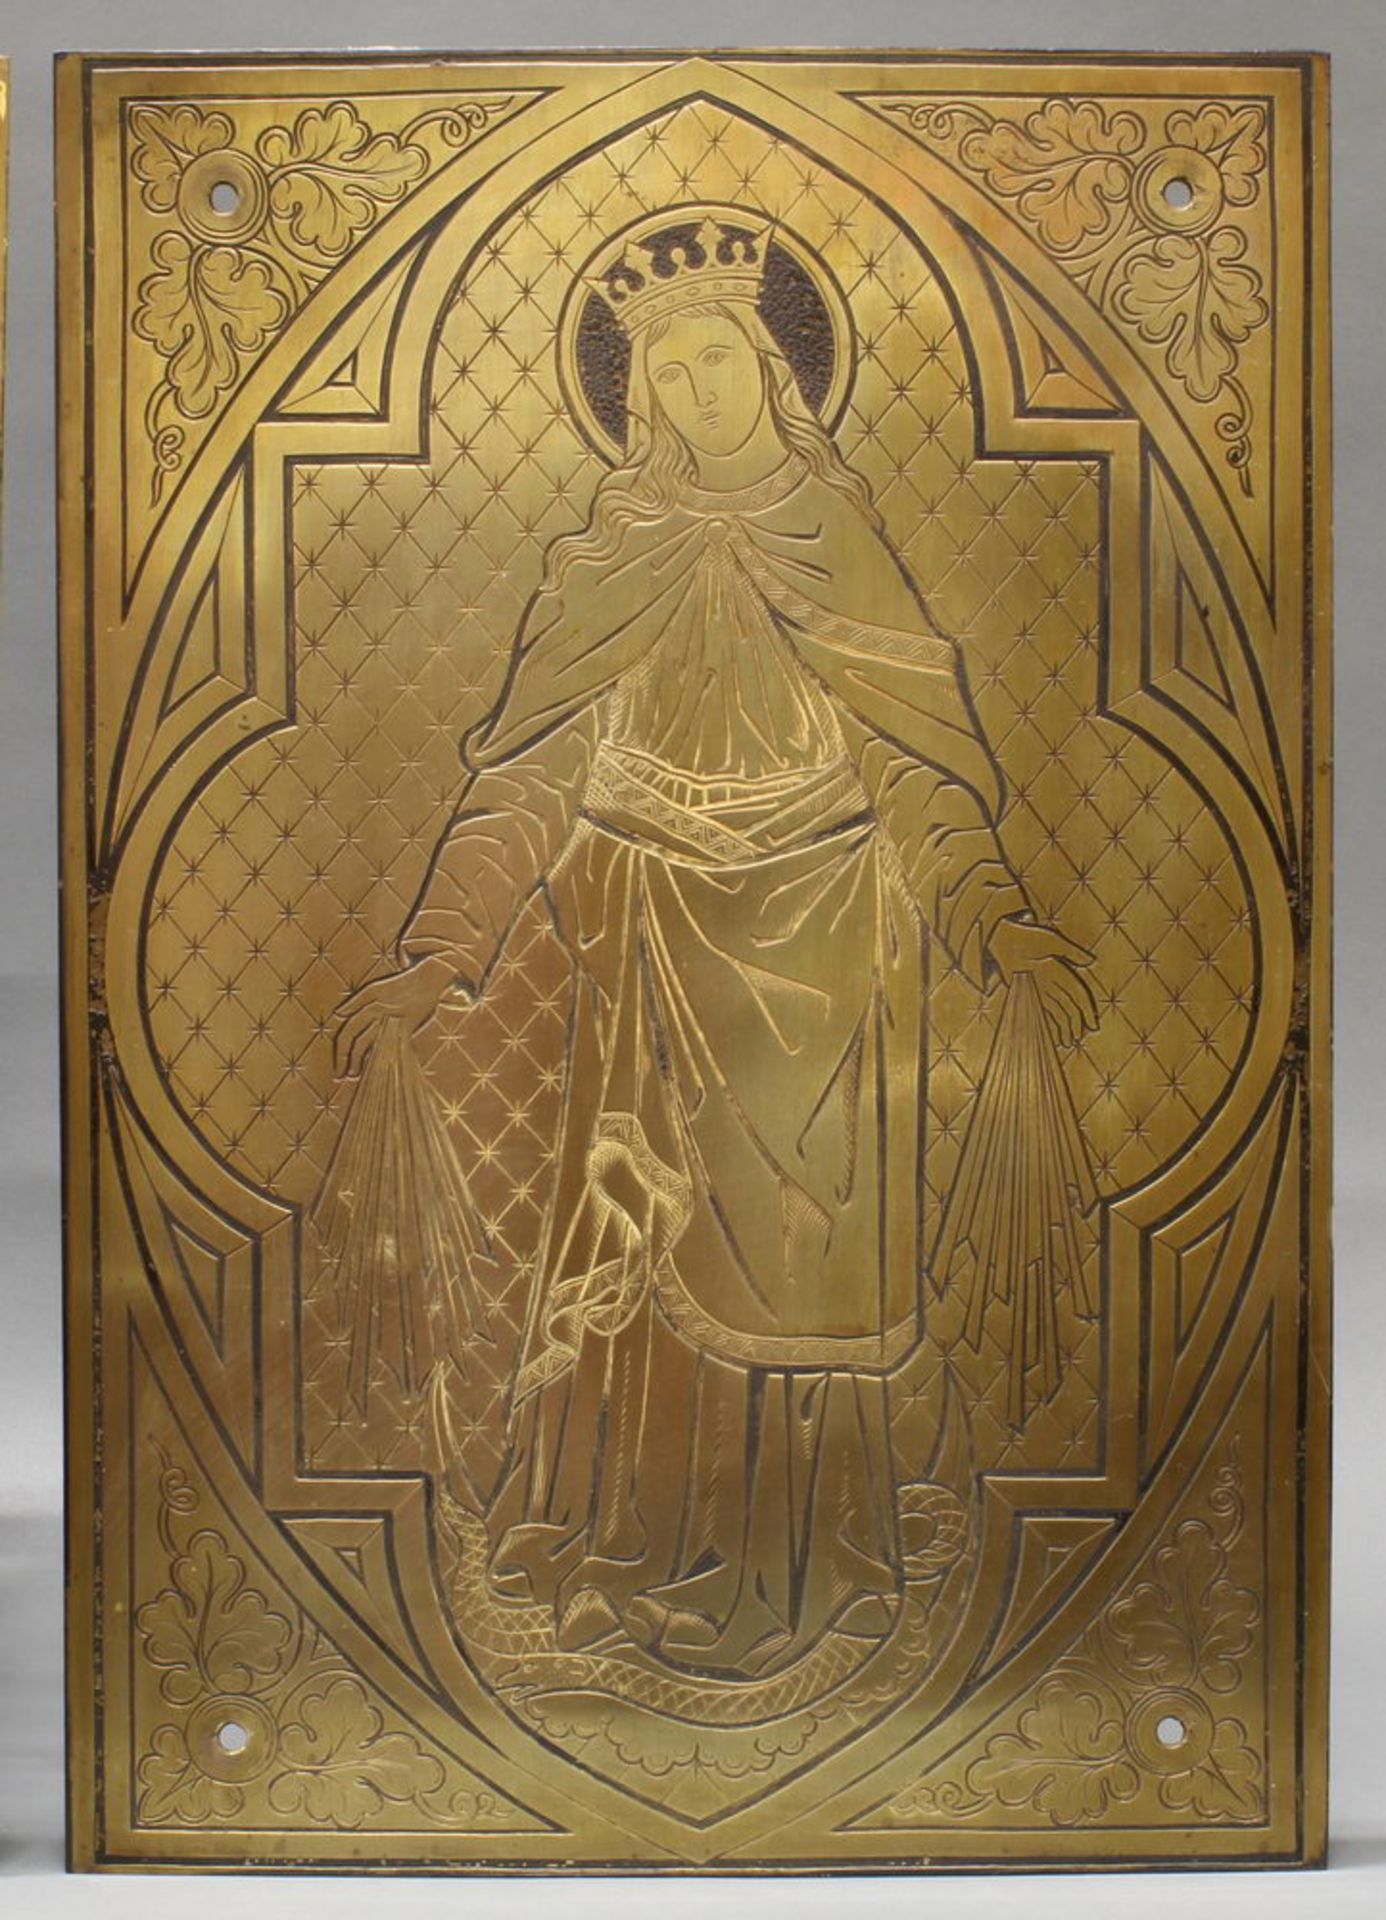 2 Reliefplatten, Metall, "Heiligendarstellungen", um 1900, jeweils 53 x 37 cm, kleine Beschädigung - Image 2 of 3